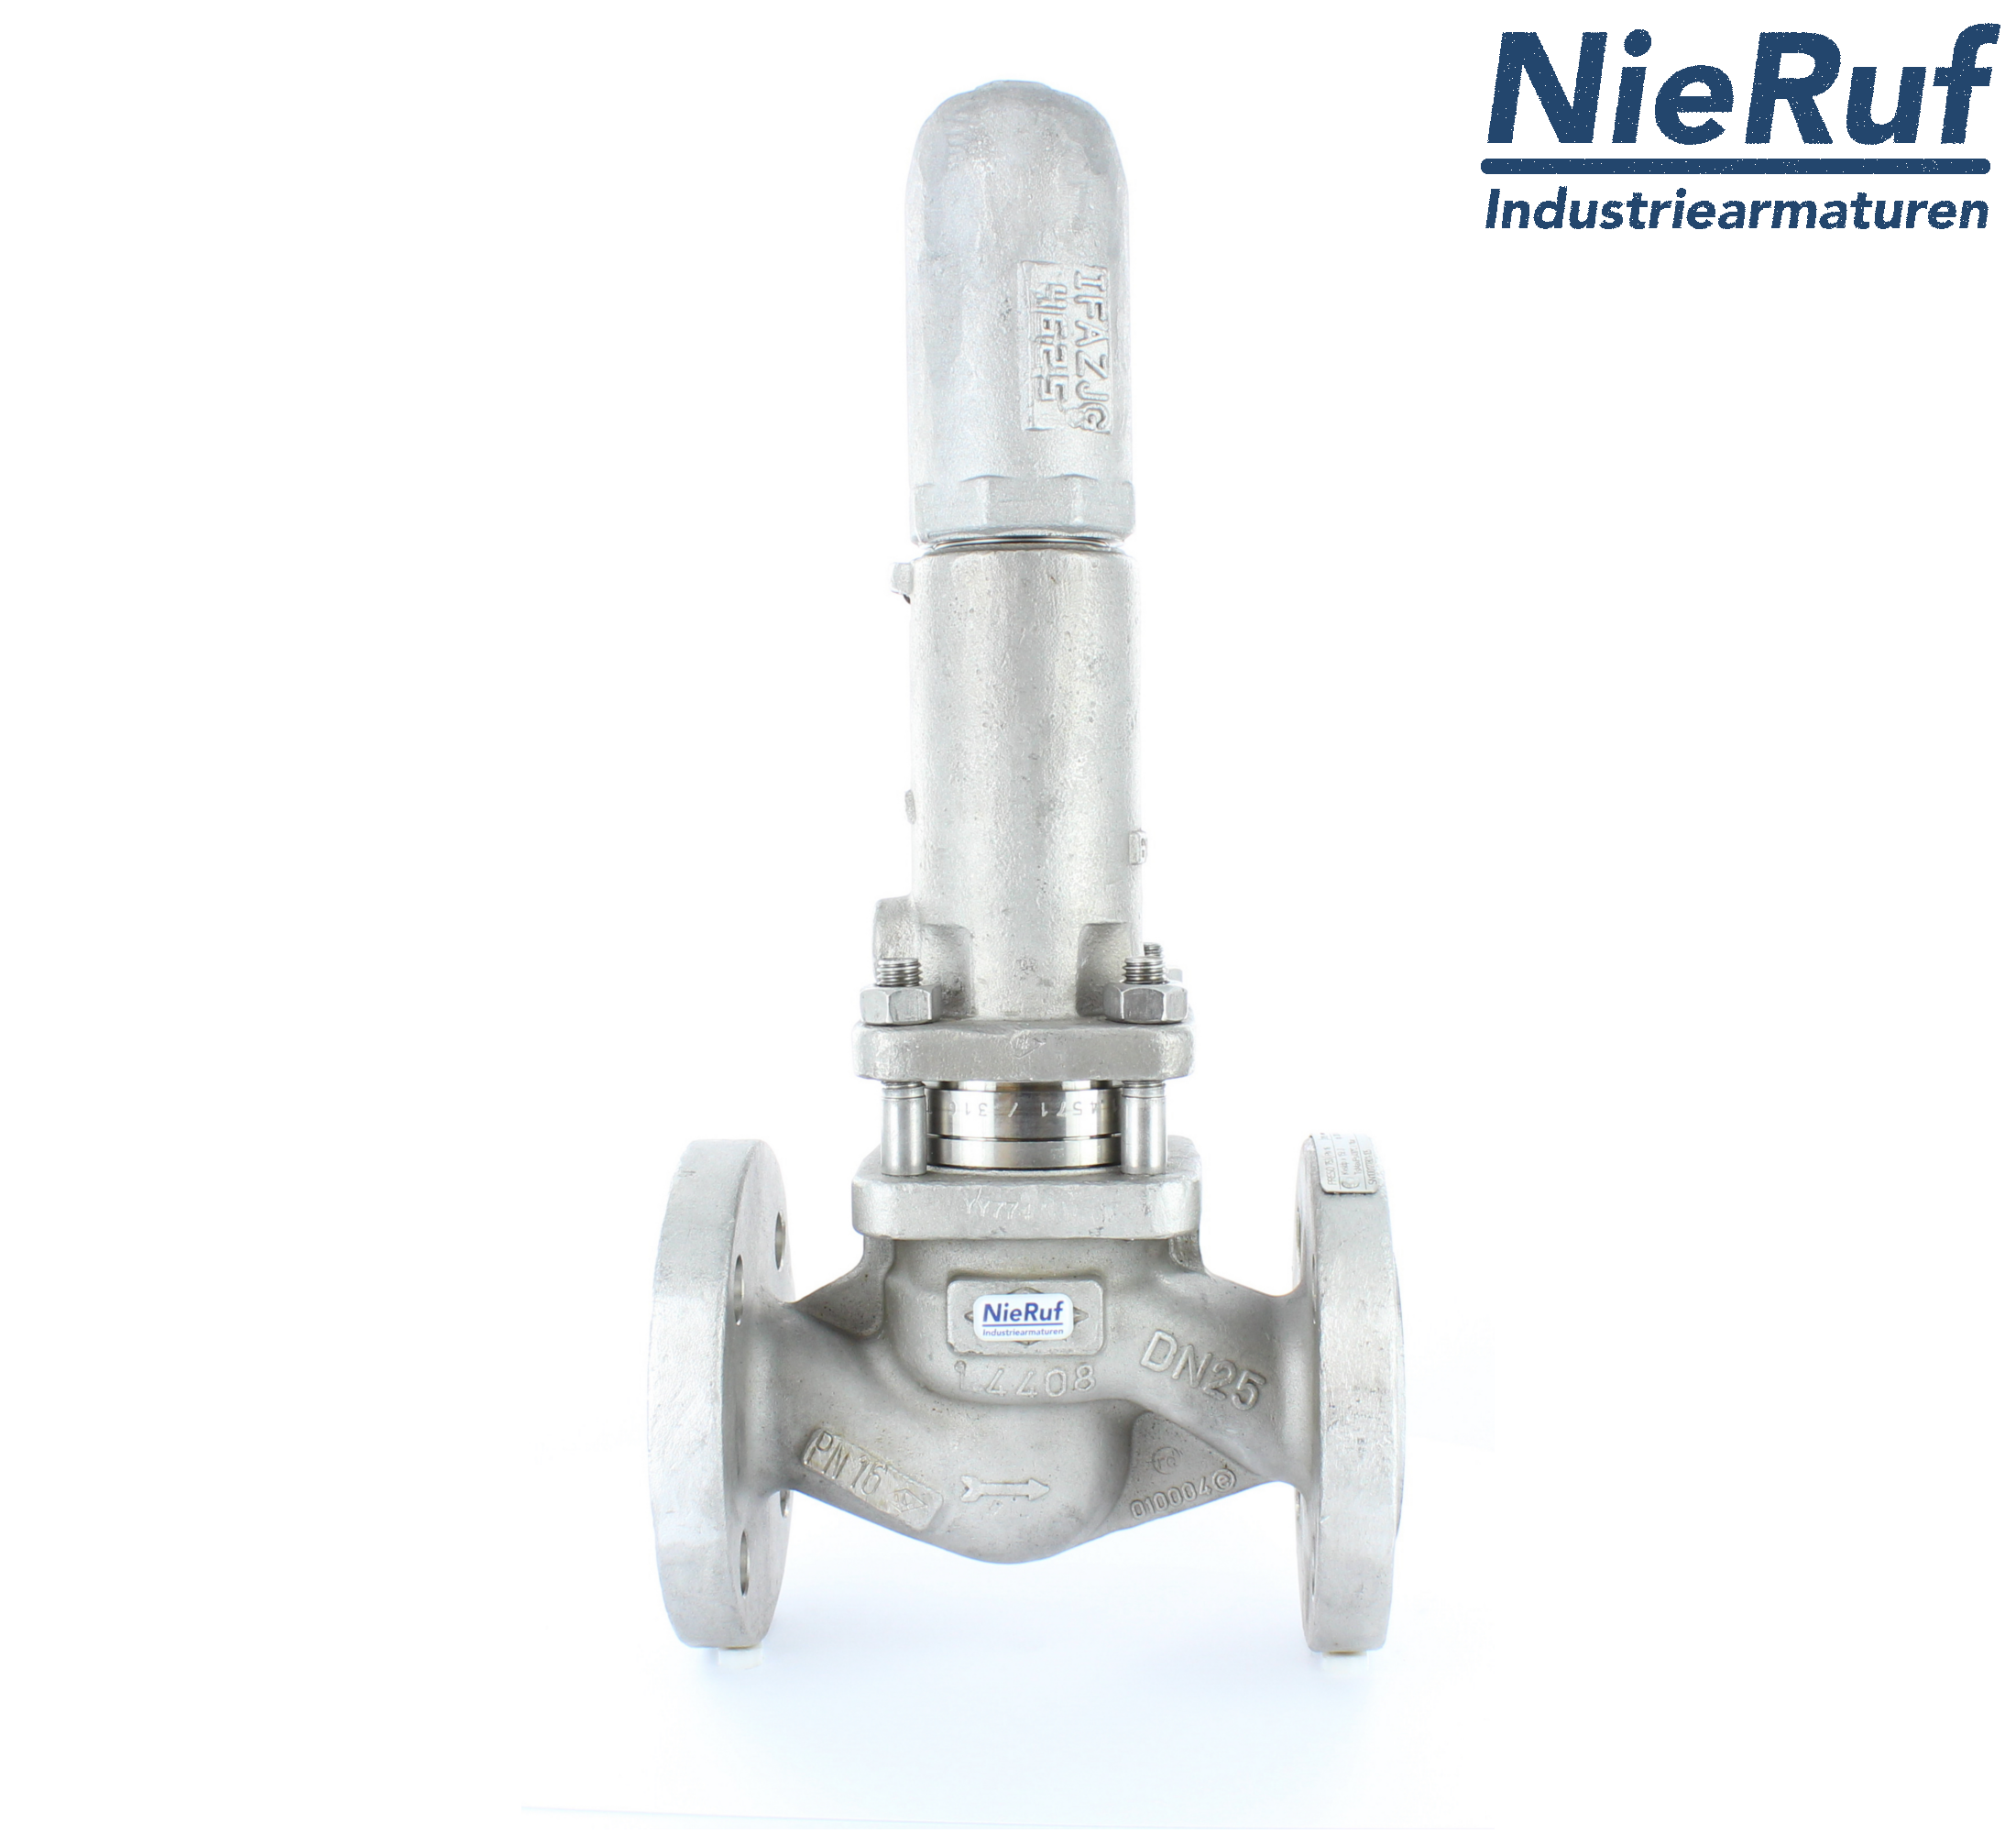 piston overflow valve DN 80 UV13 cast iron 1.0619+N 1,0 - 3,0 bar